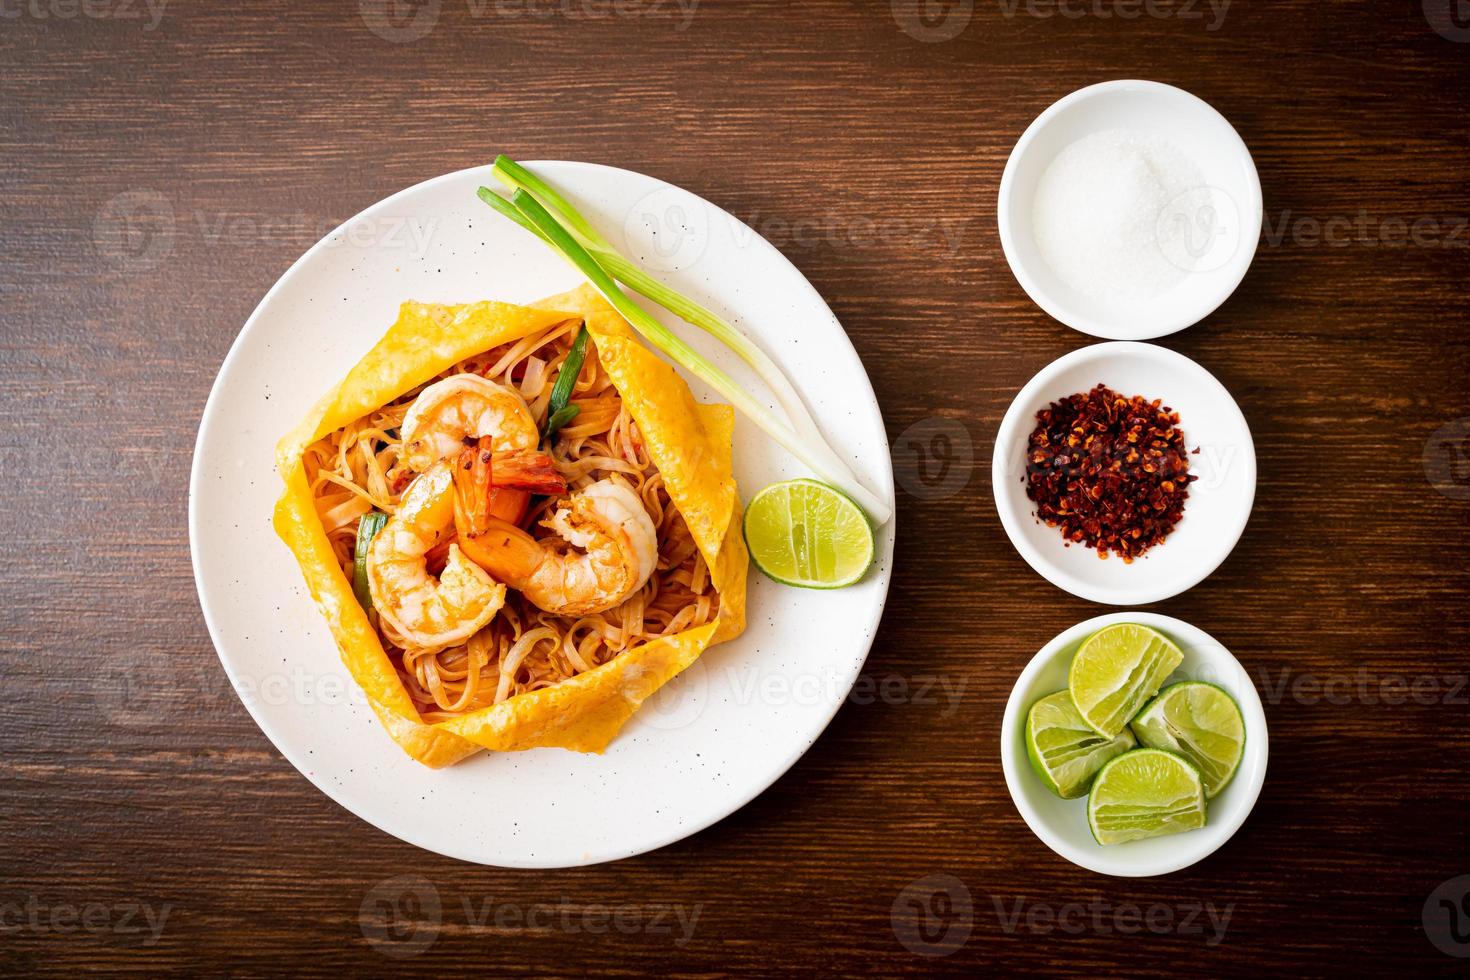 nouilles sautées thaï aux crevettes et wrap aux œufs ou pad thaï photo